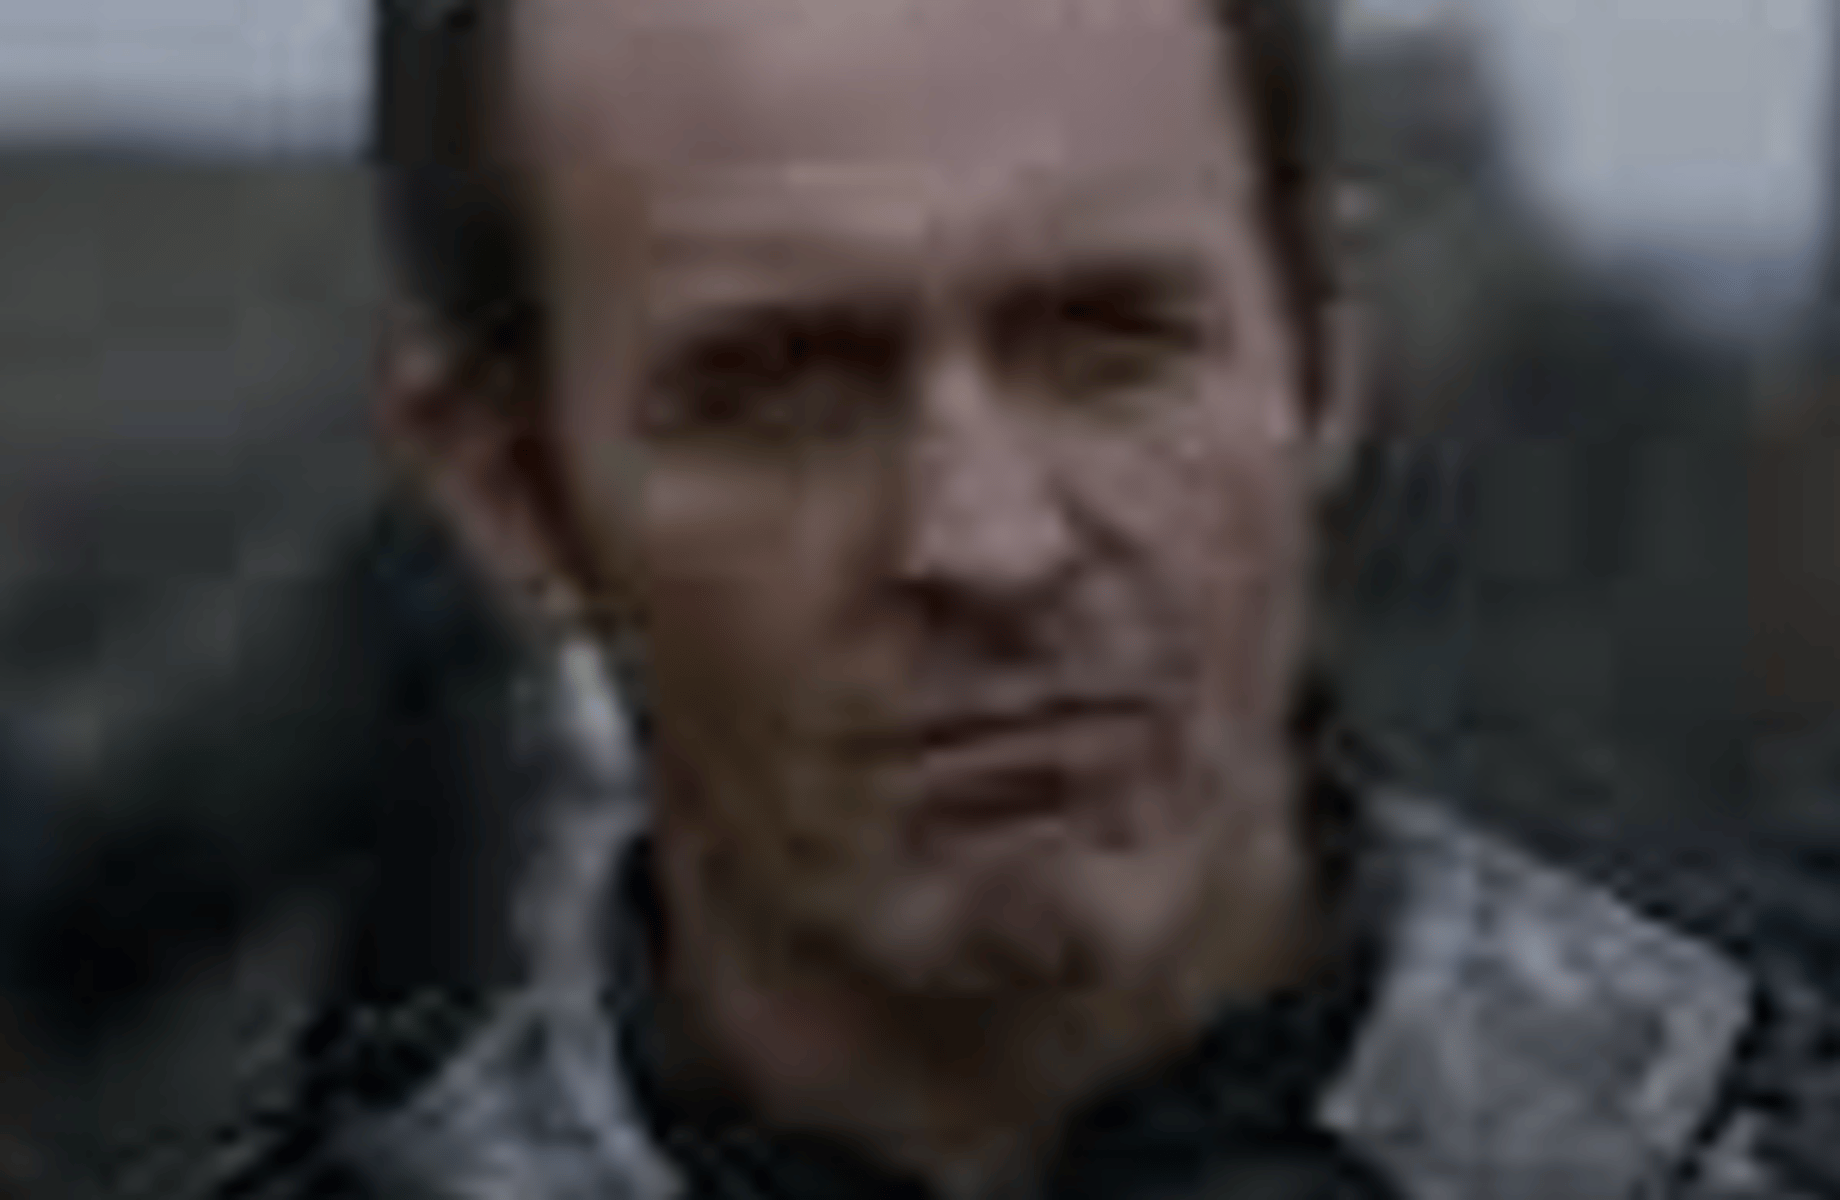 Stannis baratheon